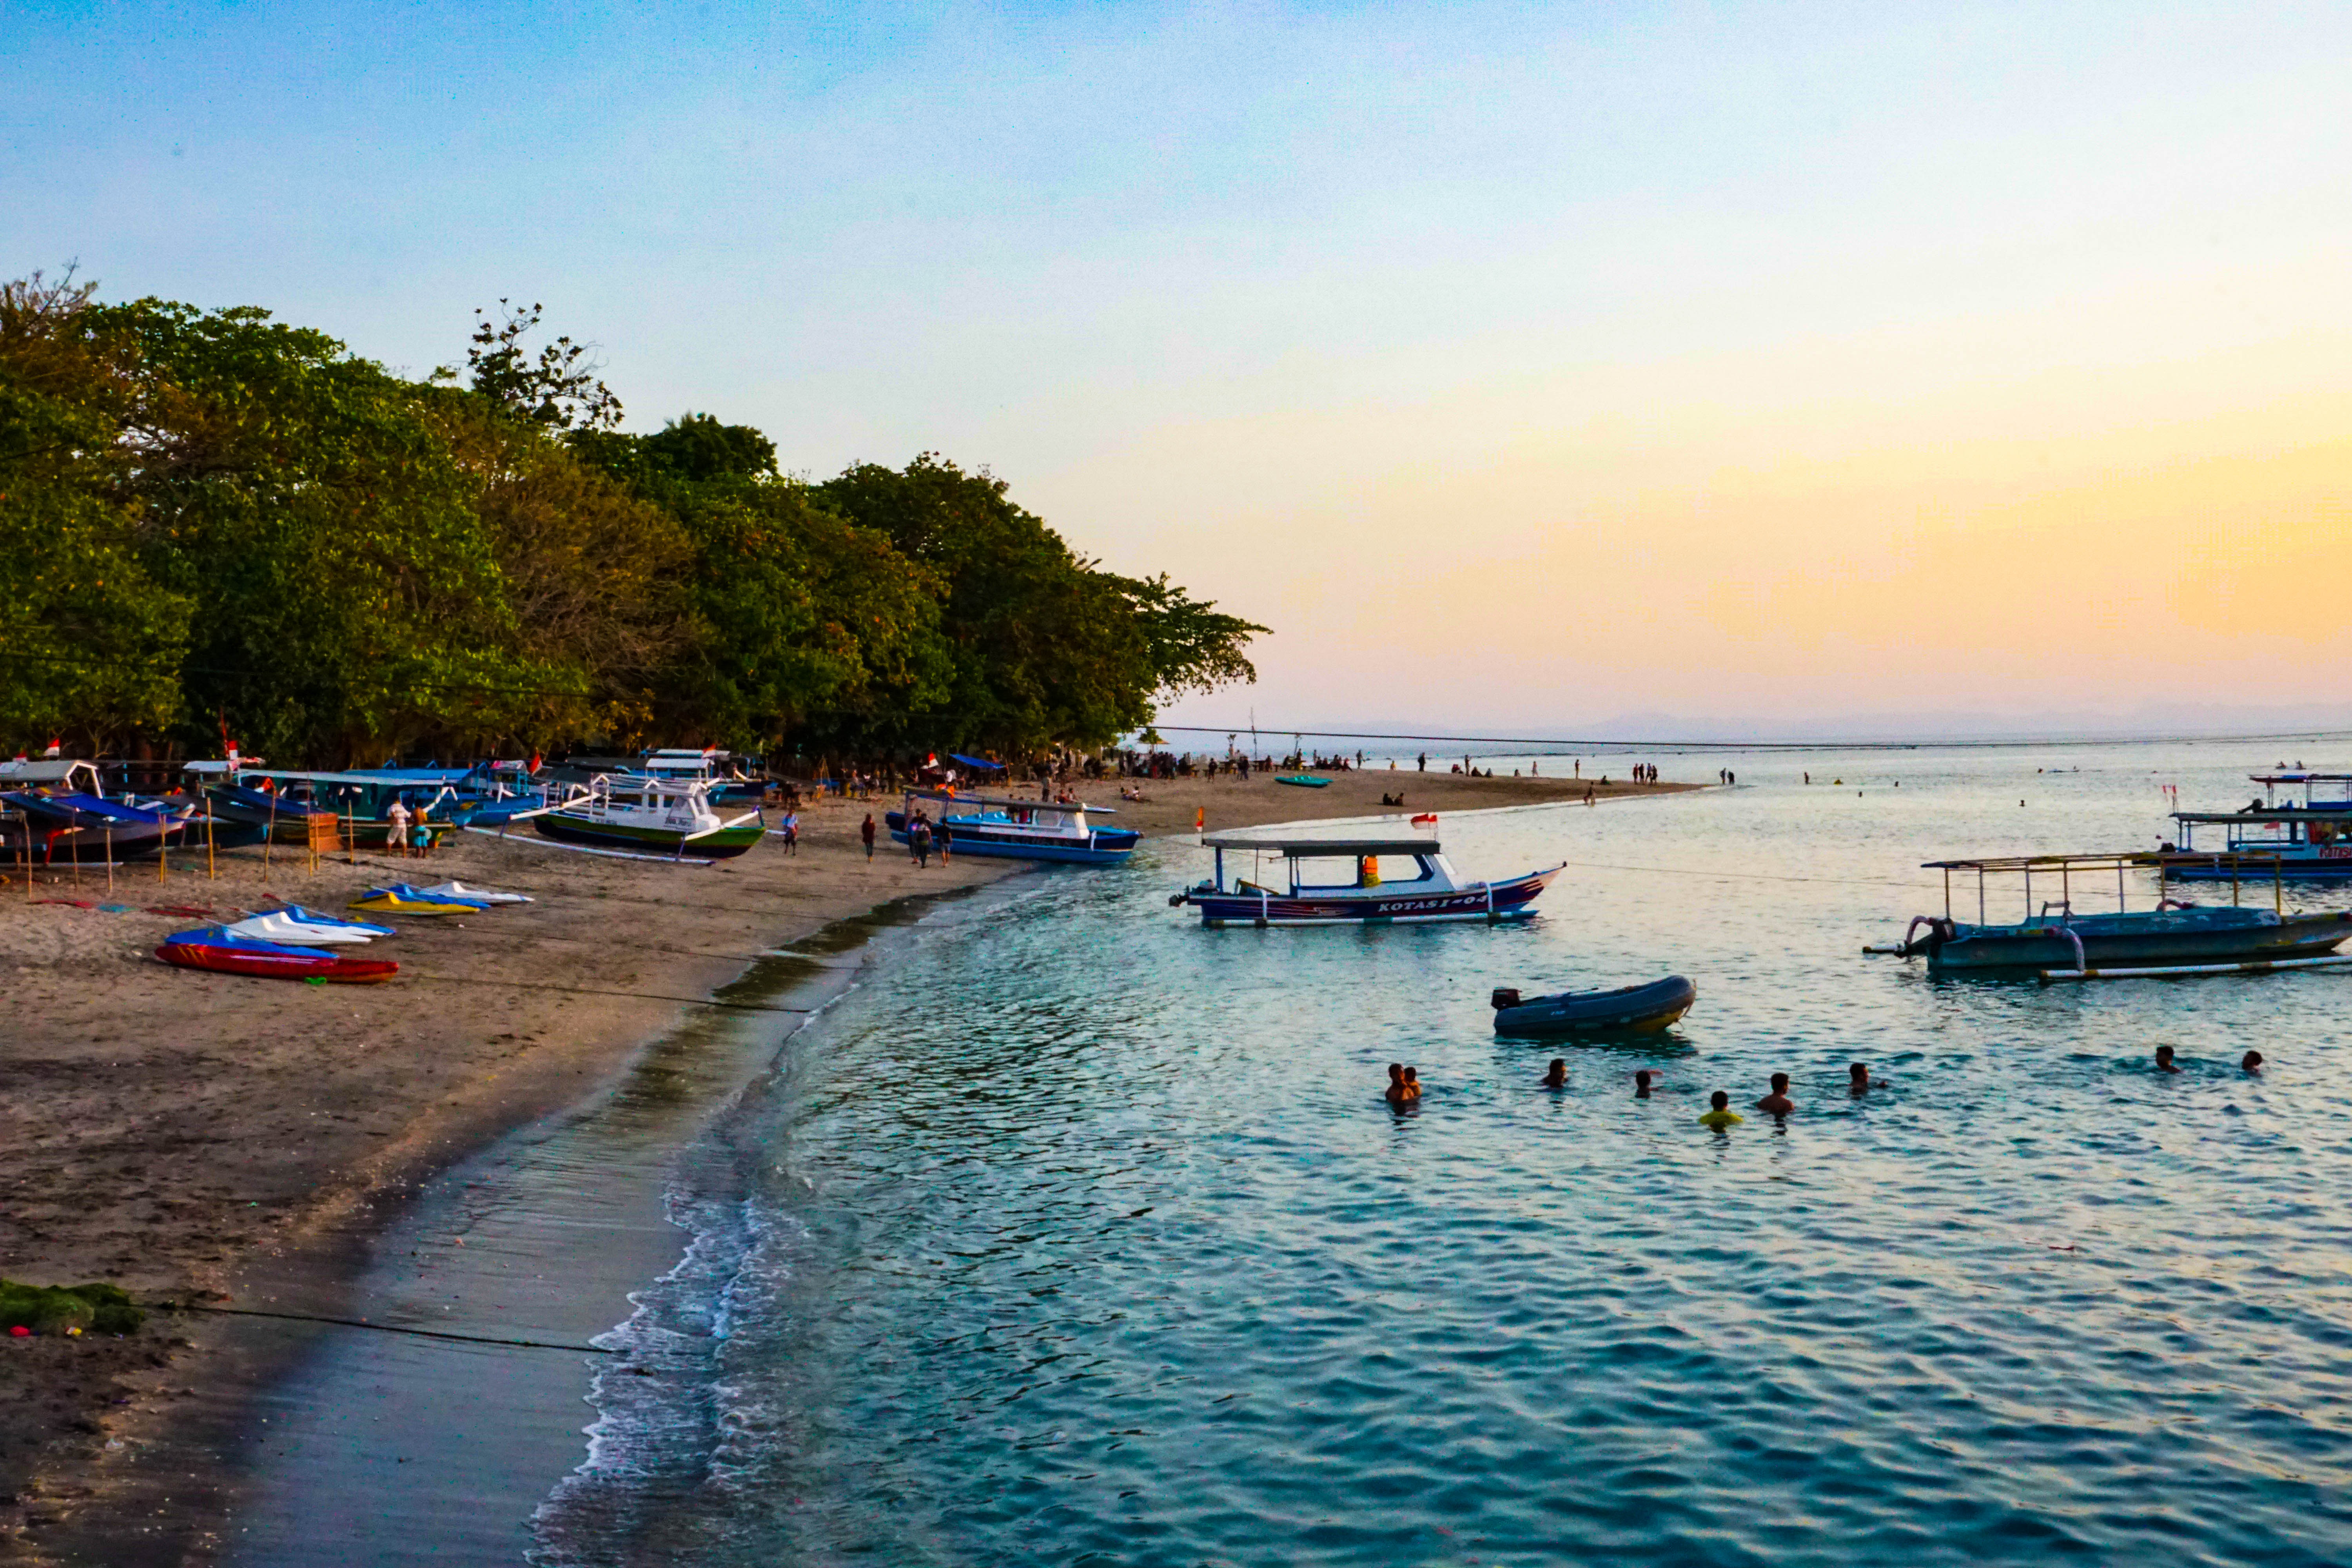  Pantai  Senggigi  Lombok Wisata Alam yang Pesonanya 